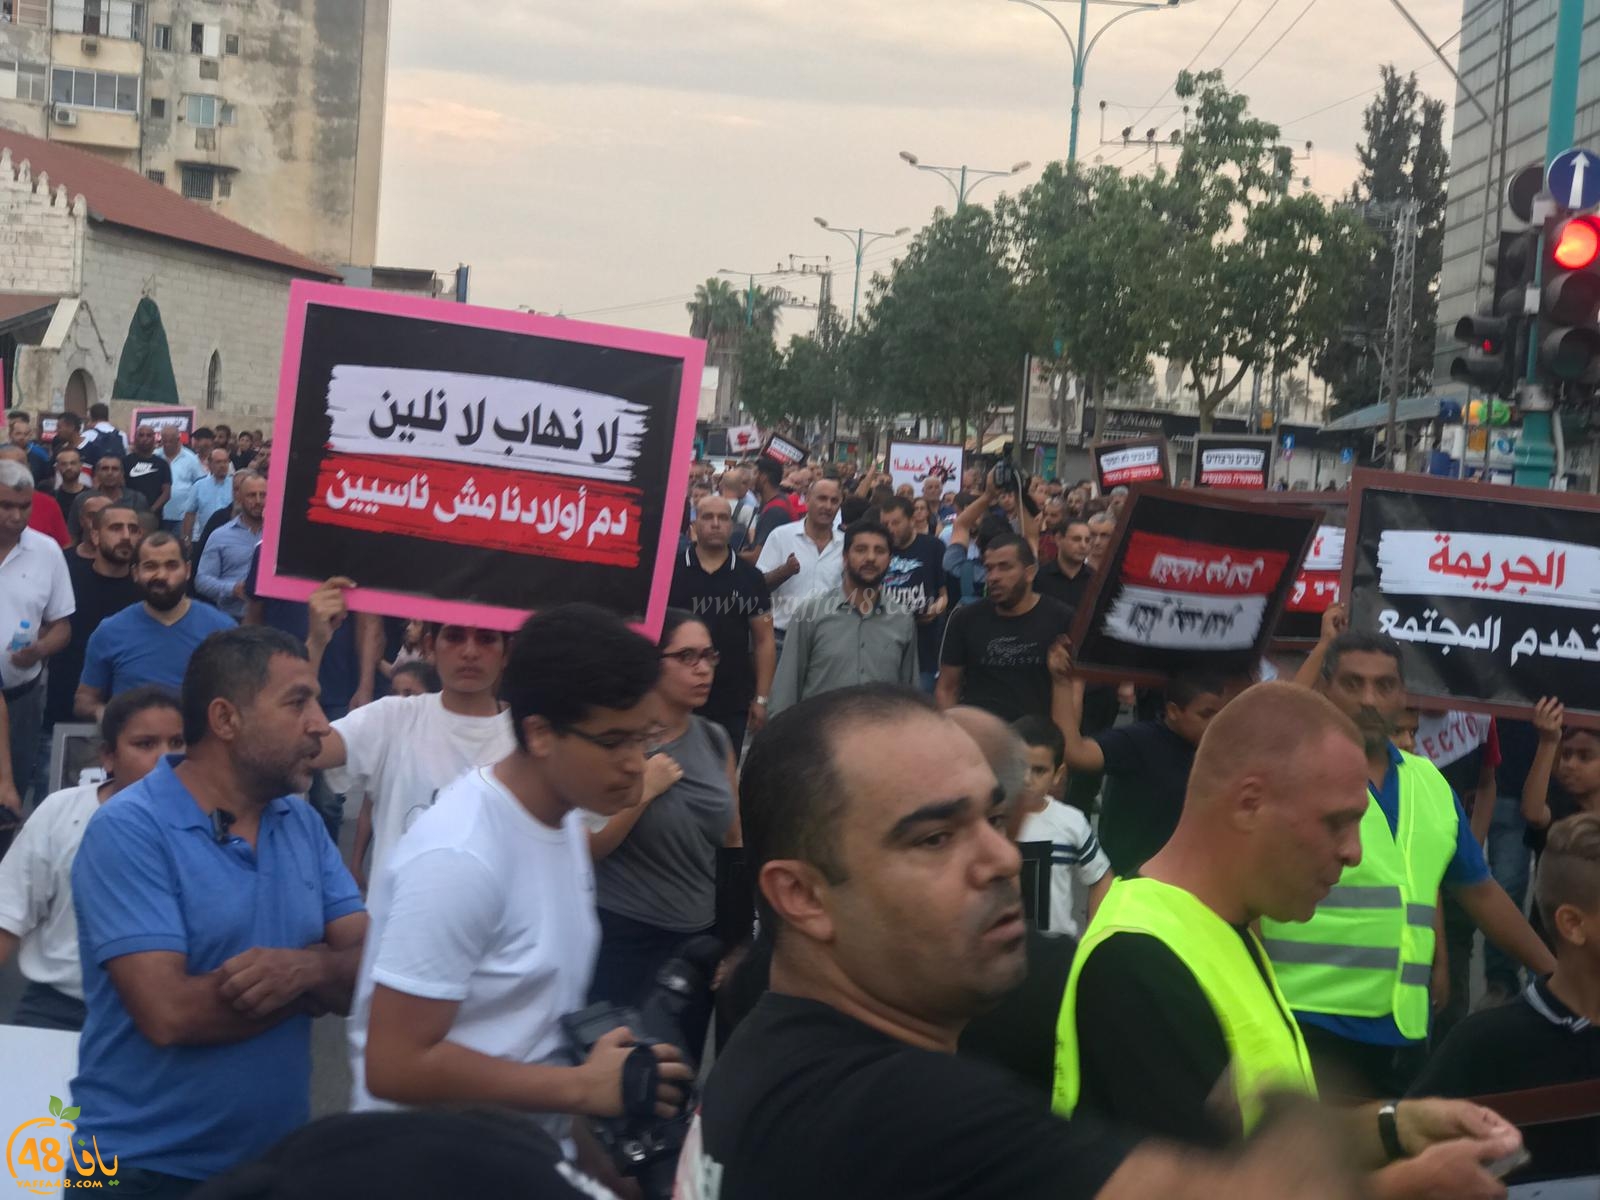 فيديو: تظاهرة قطرية غاضبة في مدينة الرملة احتجاجاً على العنف والجريمة